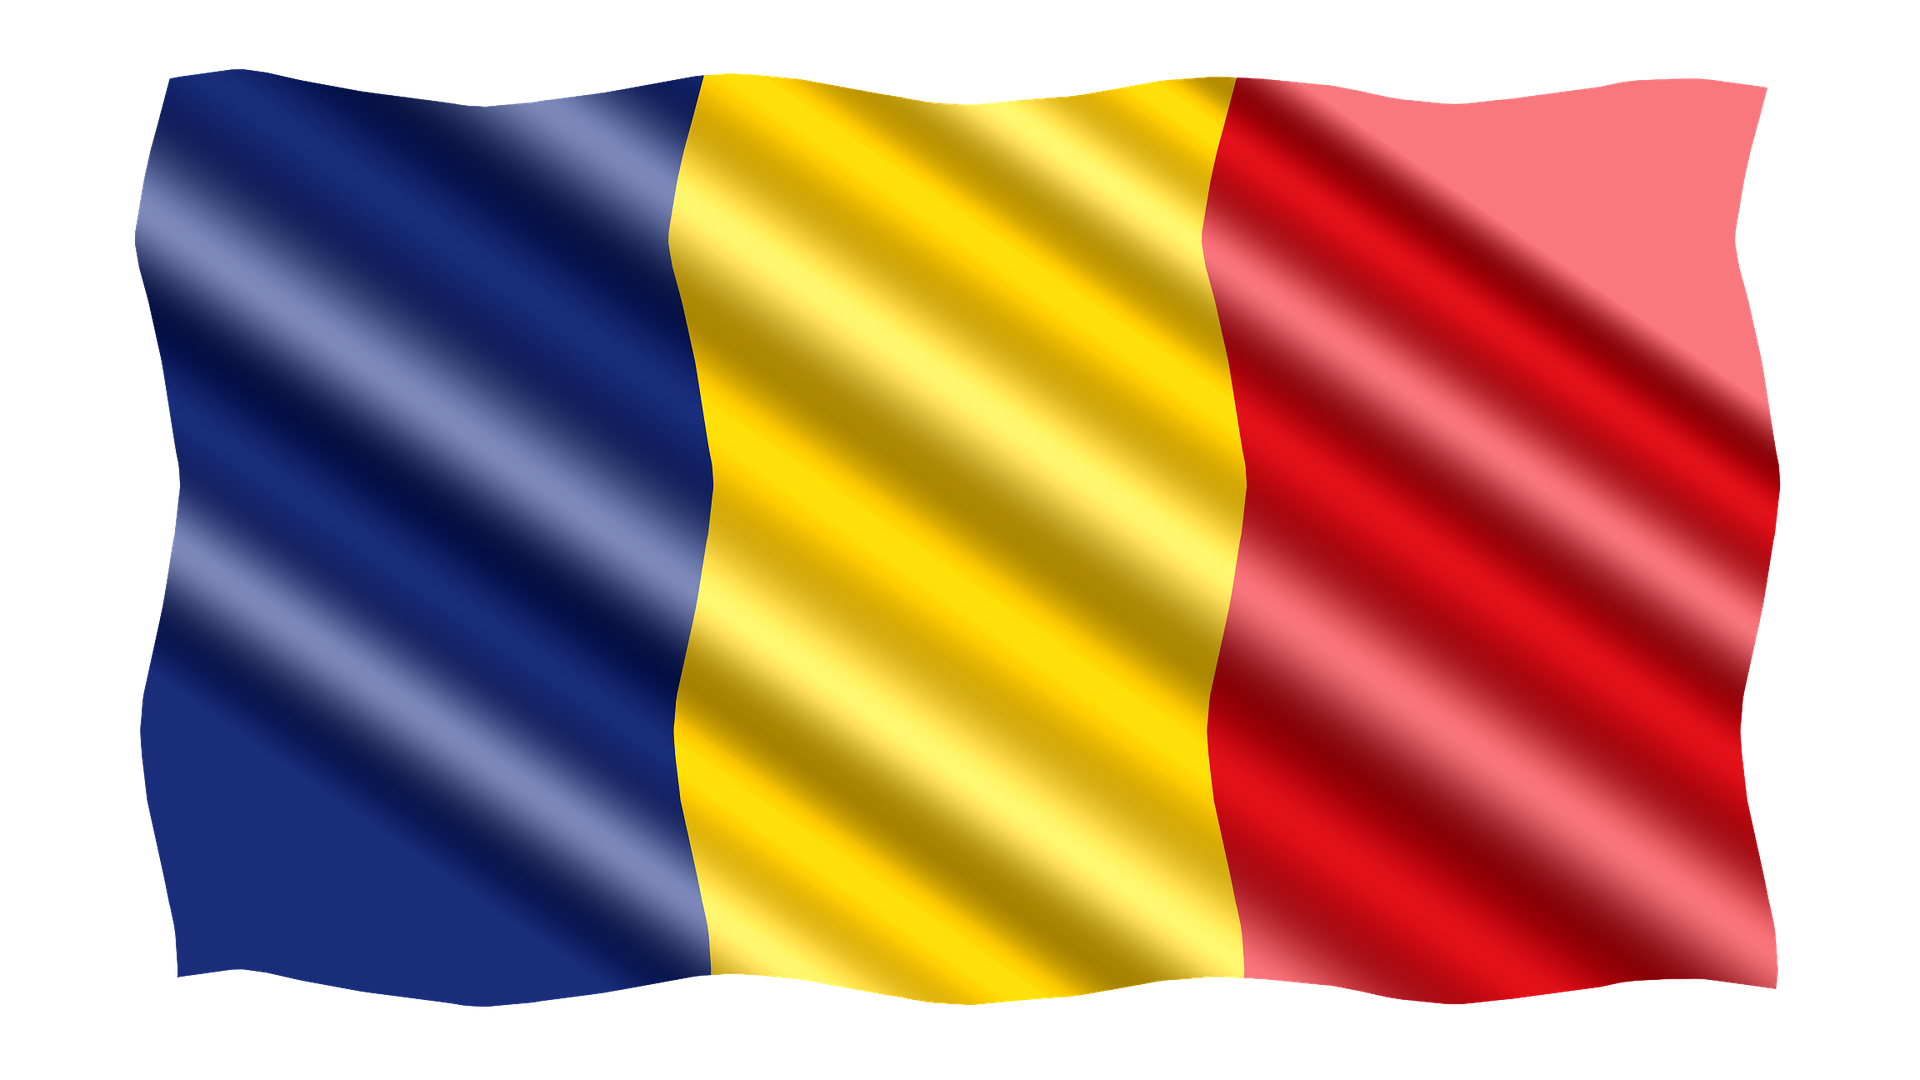 Флаг молдавской республики. Флаг Республики Молдова. Флаг Молдовы и Румынии. Флаг Республики Молдавии. Флаг Румынии и флаг Молдовы.